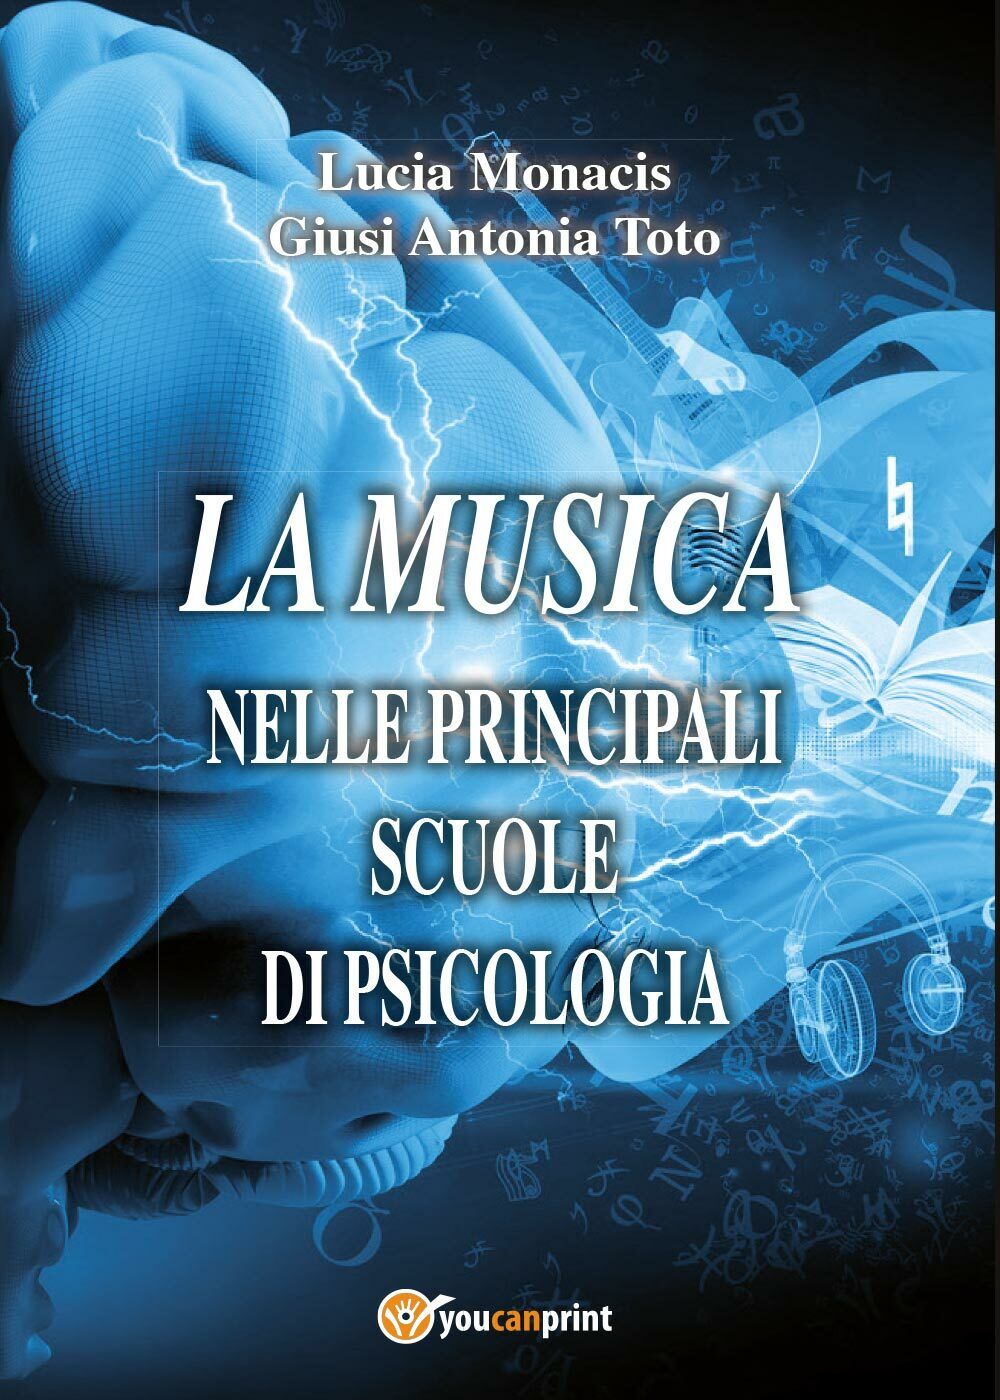 La musica nelle principali scuole di psicologia di Lucia Monacis, Giusi Antonia 